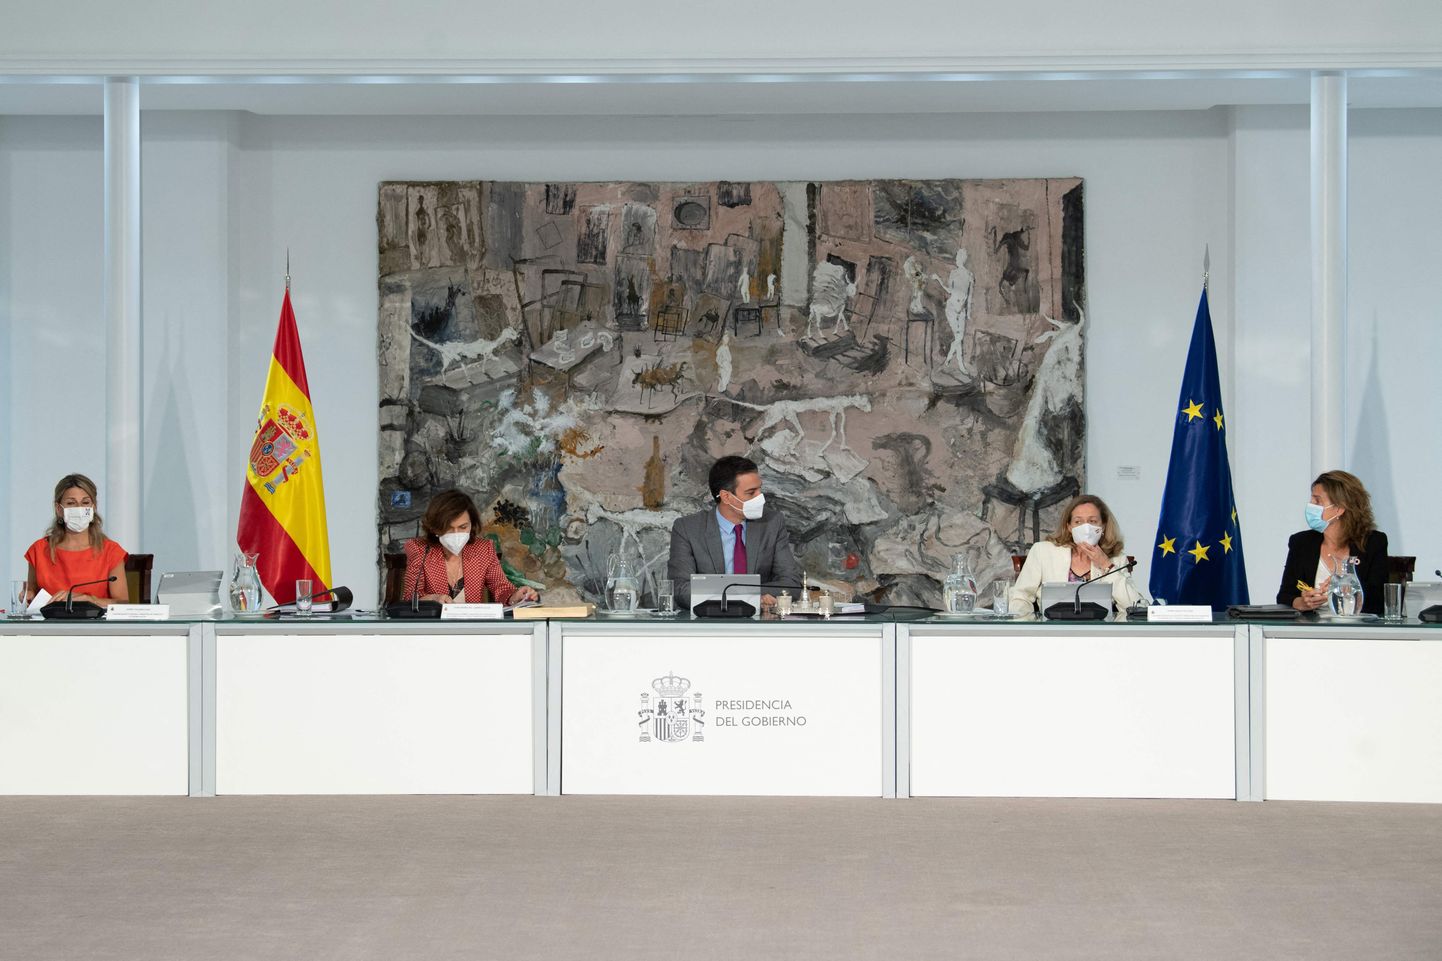 Hispaania valitsuse istung, kus kiideti heaks ka armuandmine üheksale vangistatud Kataloonia liidrile.